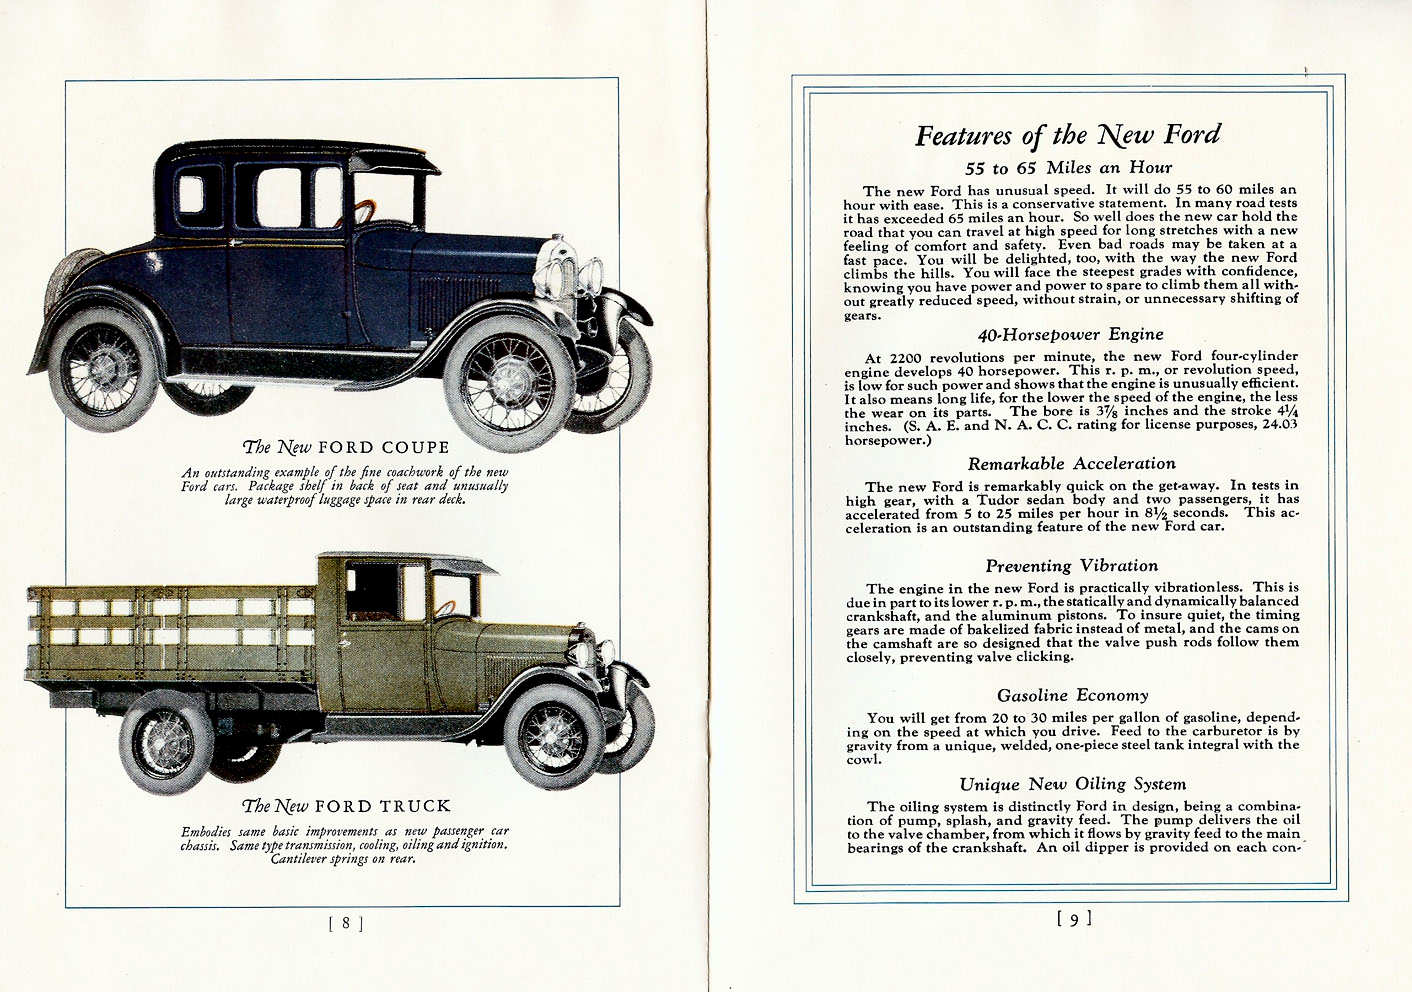 n_1928 Ford Full Line Brochure-08-09.jpg